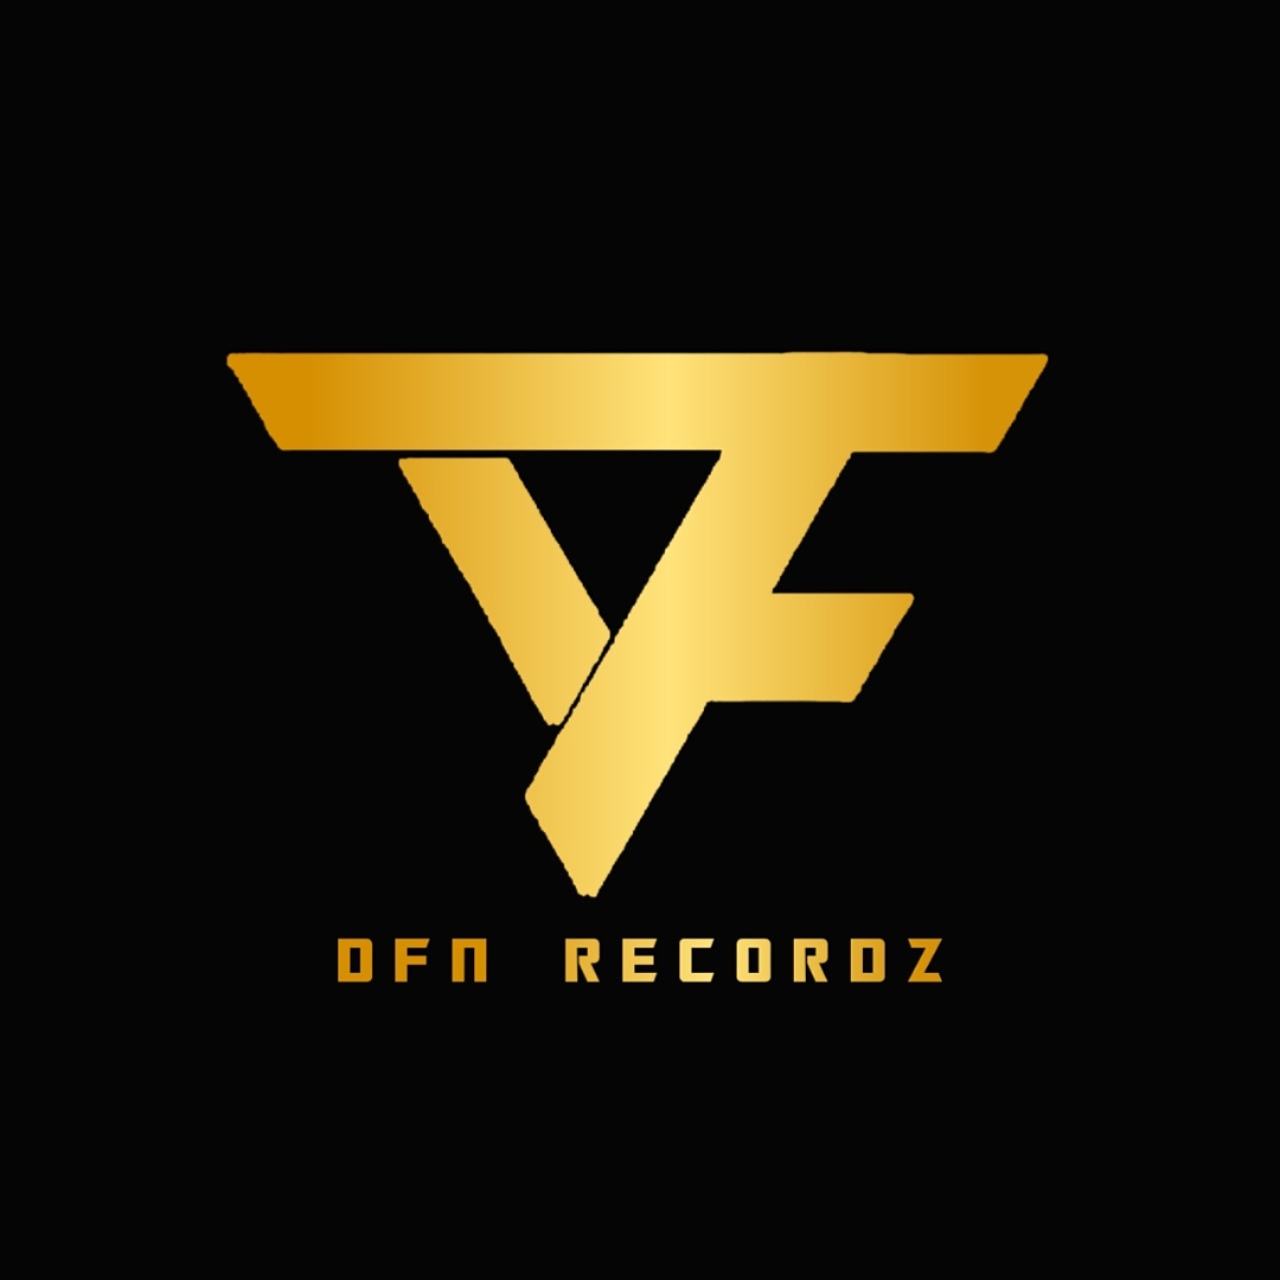 DFN Recordz Logo.jpg